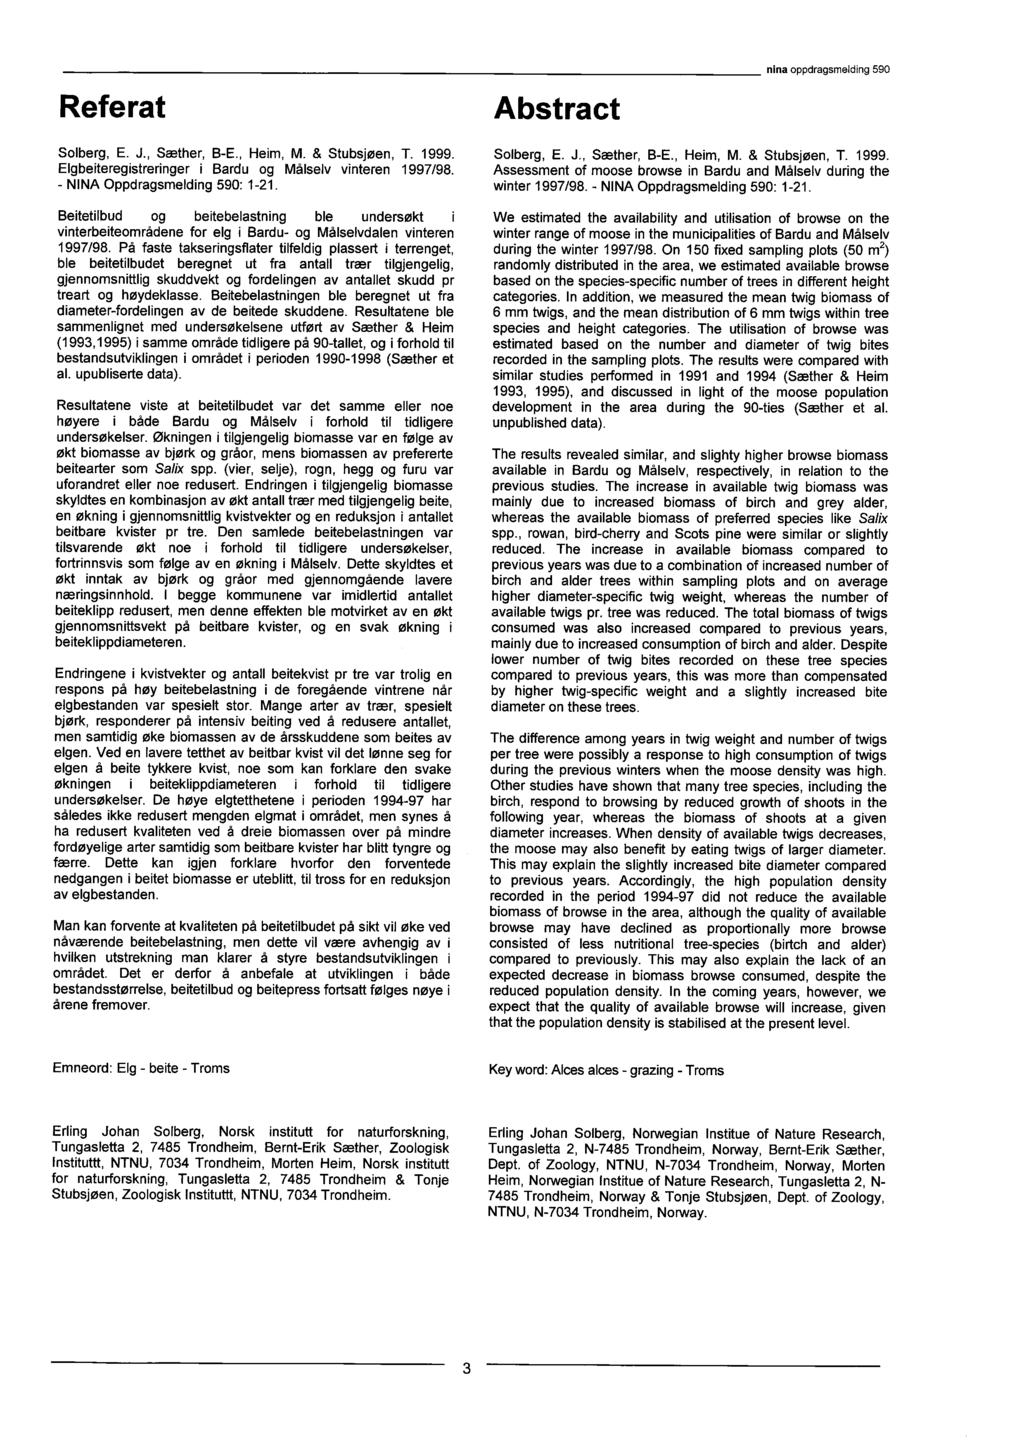 Referat Abstract ninaoppdragsmelding 590 Solberg, E. J., Sæther, B-E., Heim, M. & Stubsjøen, T. 1999. Elgbeiteregistreringer i Bardu og Målselv vinteren 1997/98. - NINA Oppdragsmelding 590: 1-21.